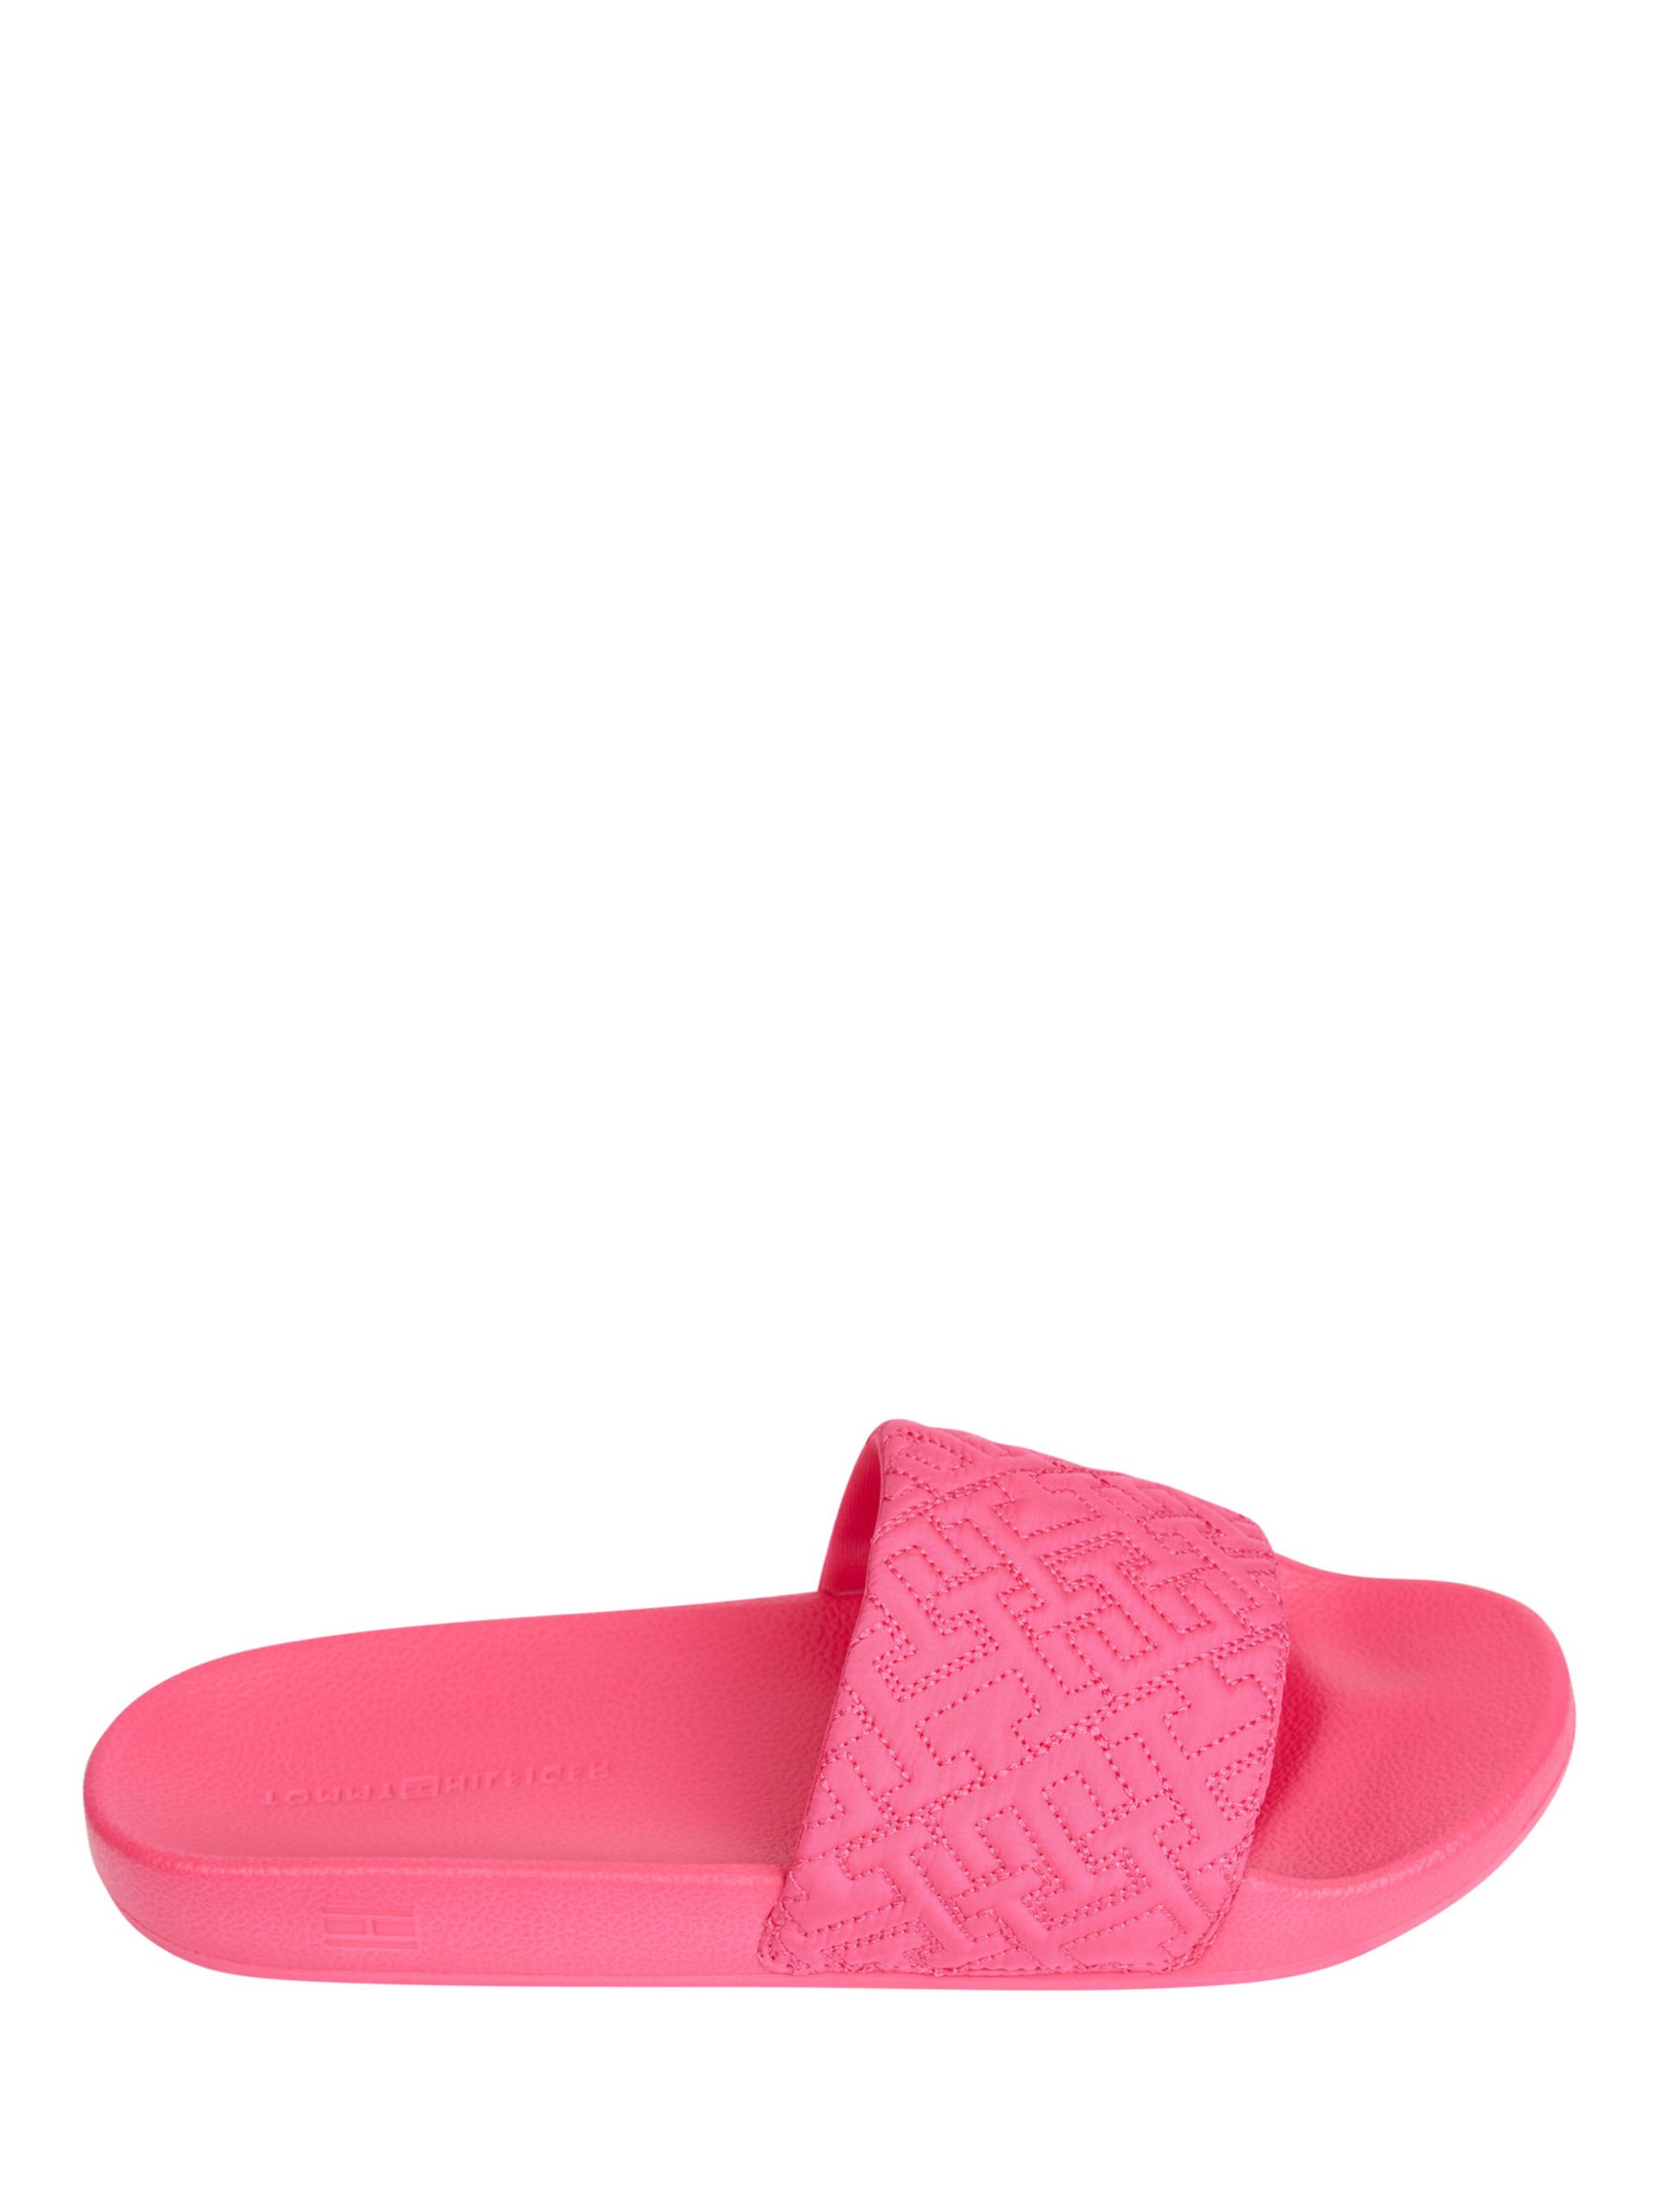 Tommy Hilfiger Elevated Slider Sandals, Bright Cerise Pink at John ...